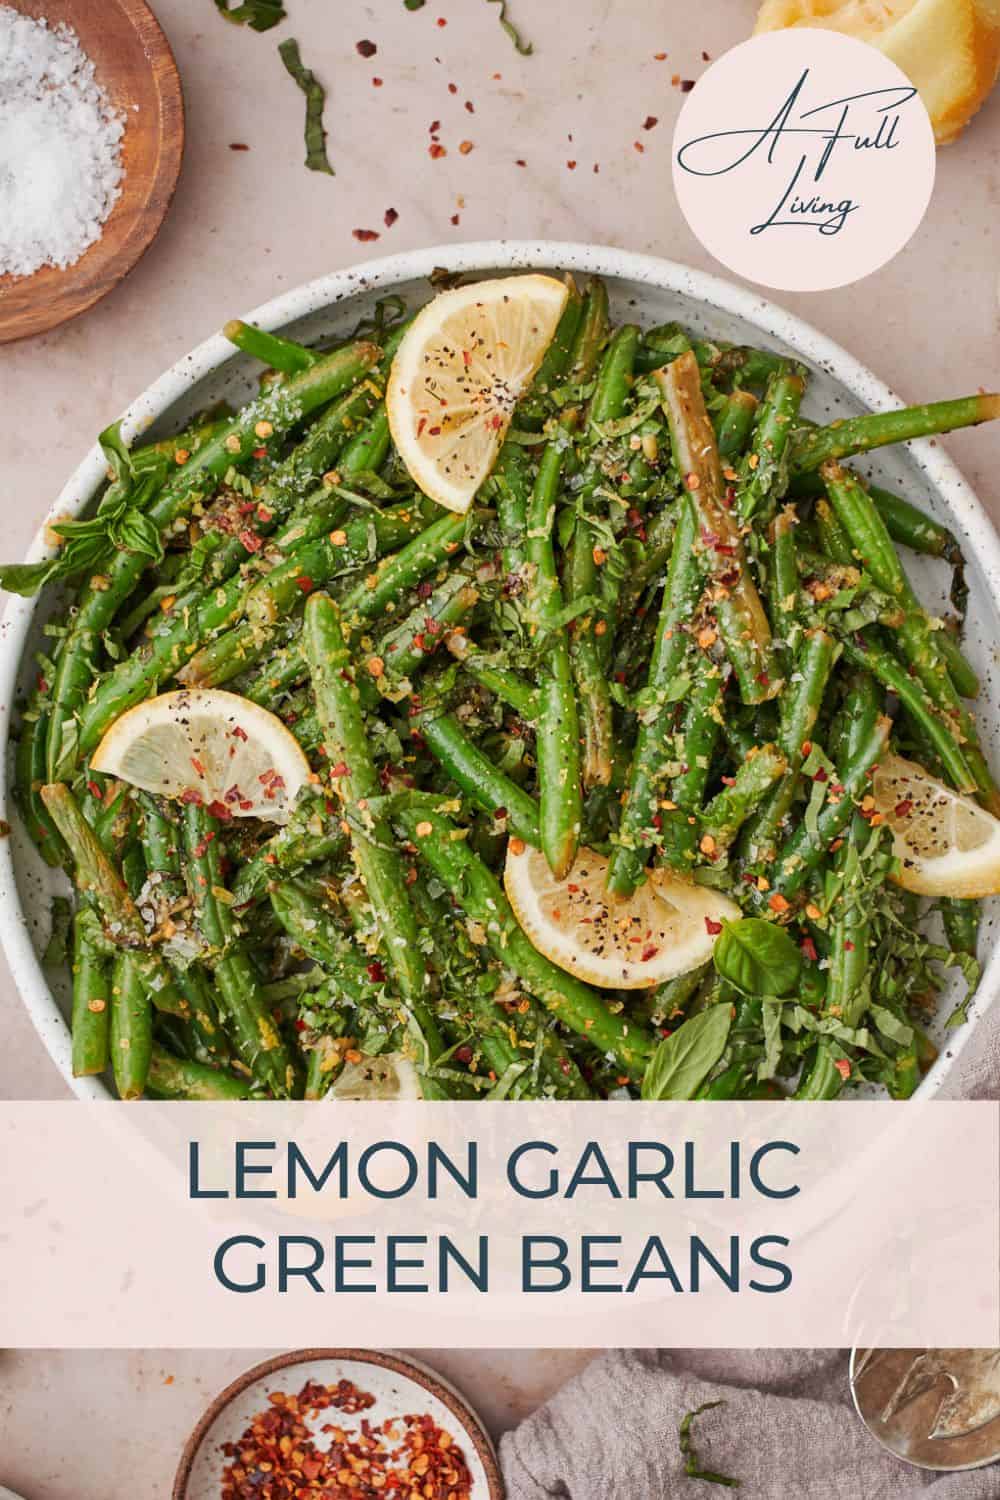 Lemon garlic green beans pinterest image.